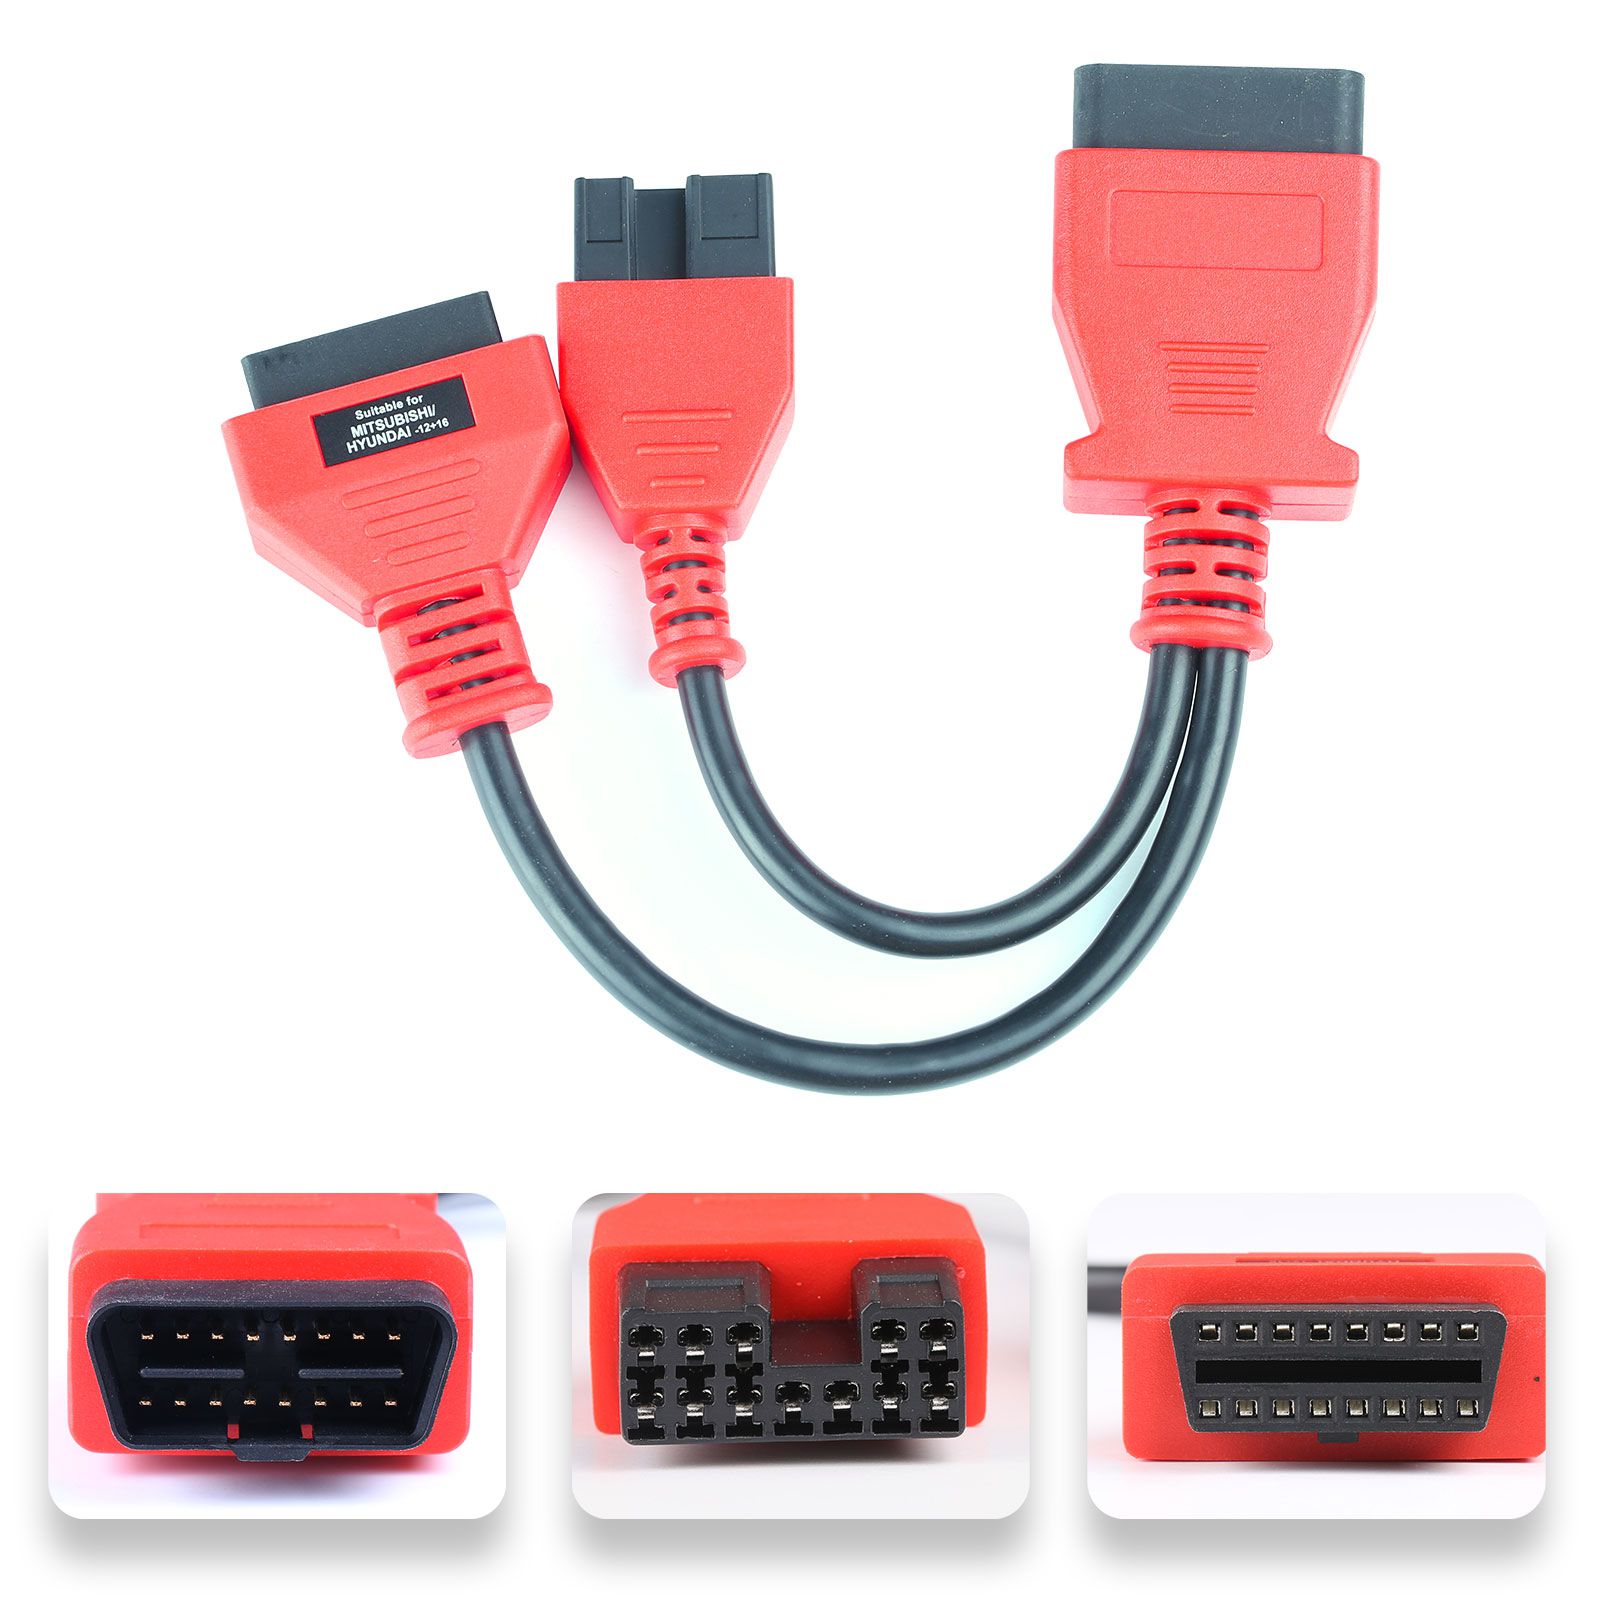 Conjunto completo de cables y conectores OBDII de autopel para ds808 / mk808 / mp808 (solo cables y conectores)